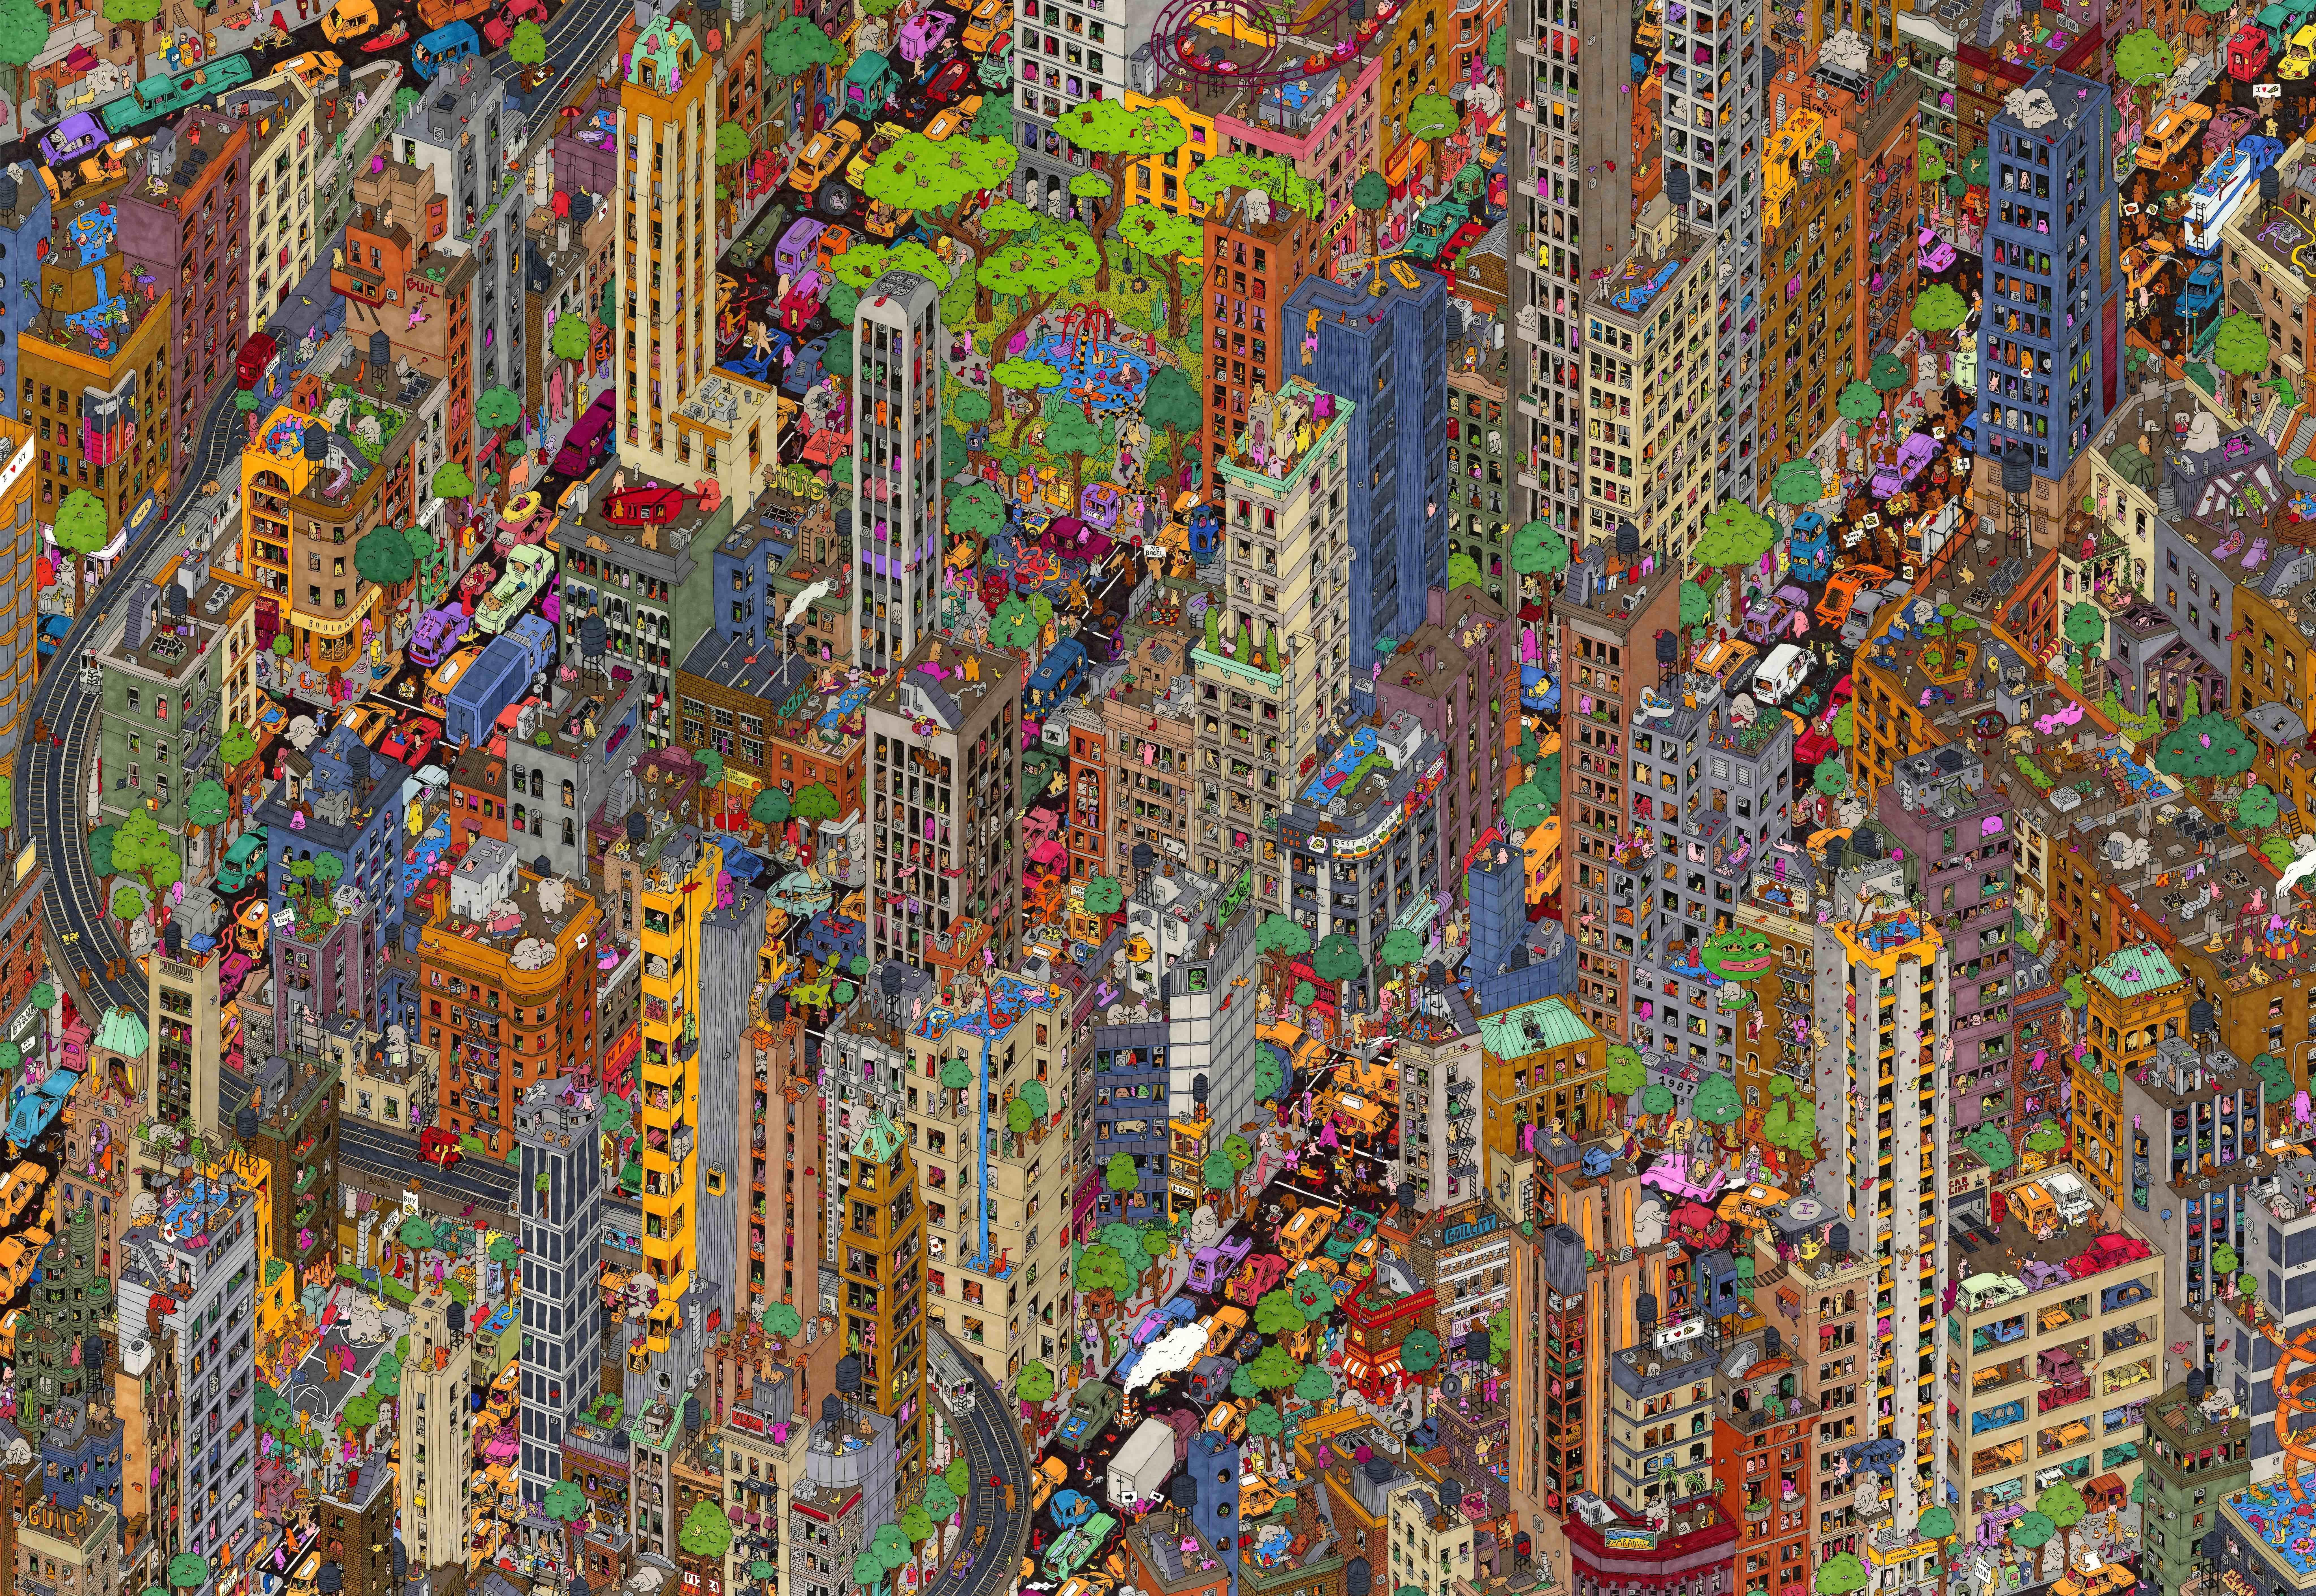 ighborhoods – aufwändige, handgezeichnete, farbenfrohe Illustration des städtischen New York